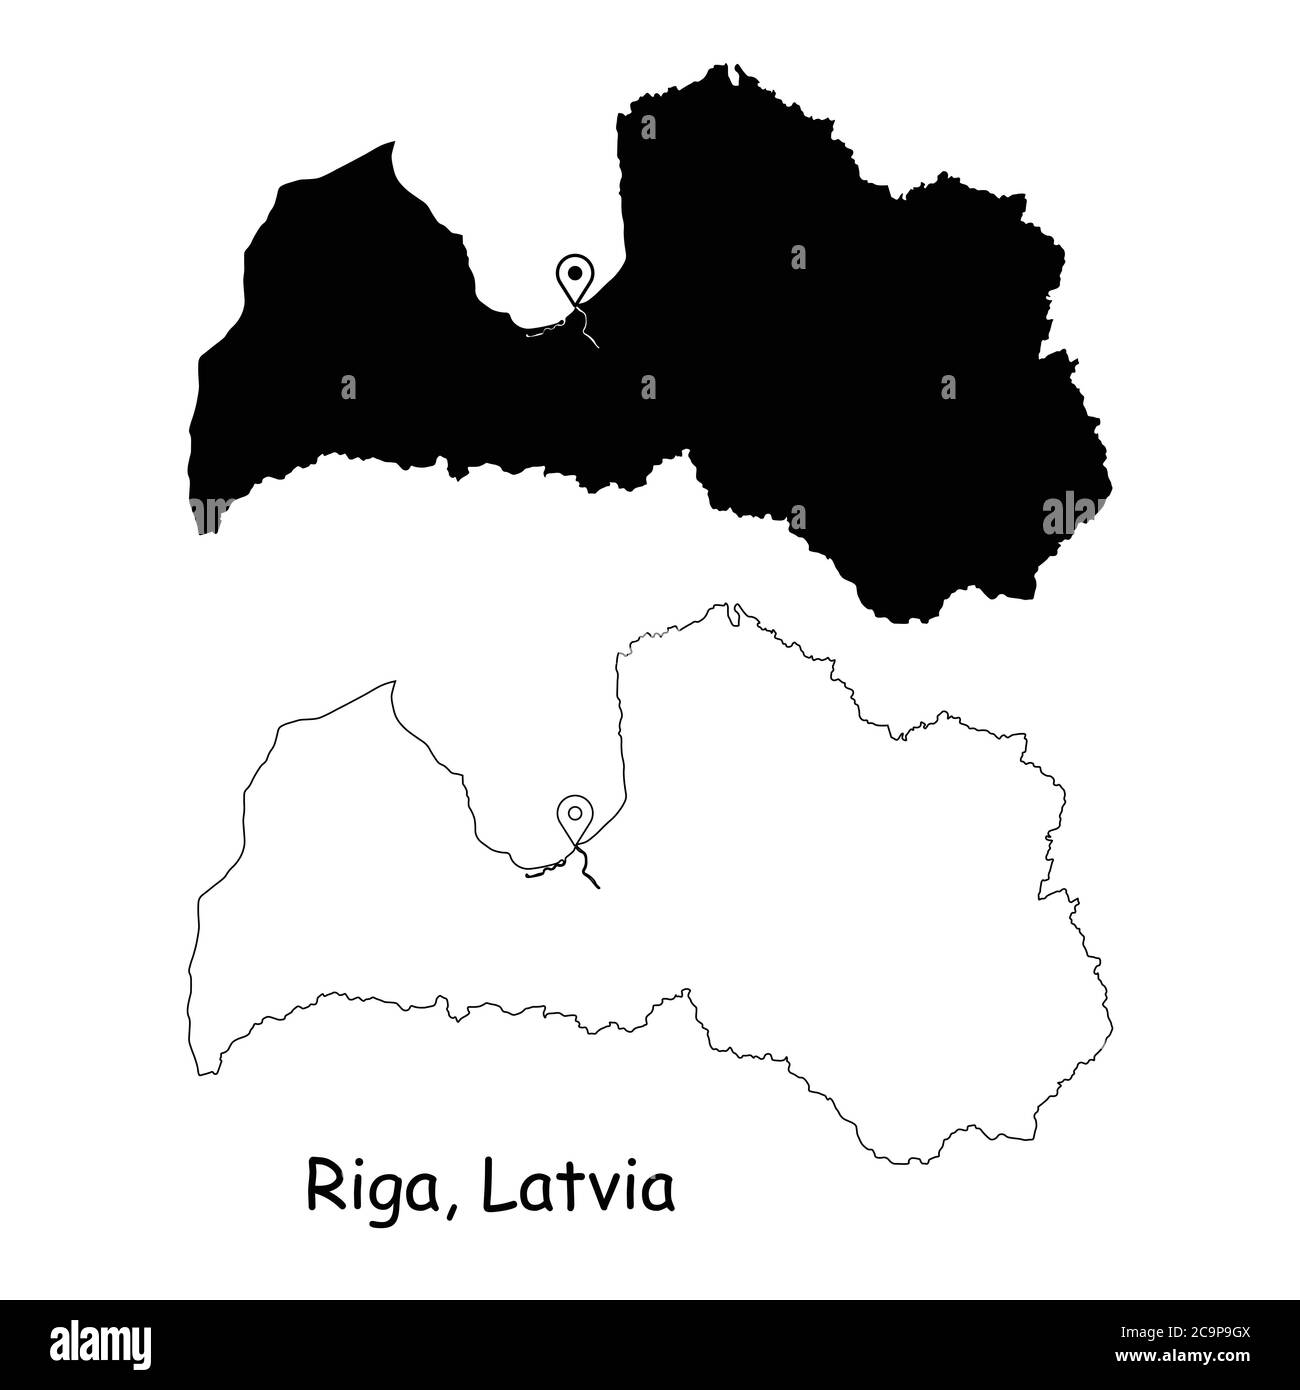 Riga Lettonia. Mappa dettagliata del Paese con il pin della posizione sulla città capitale. Silhouette nera e mappe di contorno isolate su sfondo bianco. Vettore EPS Illustrazione Vettoriale